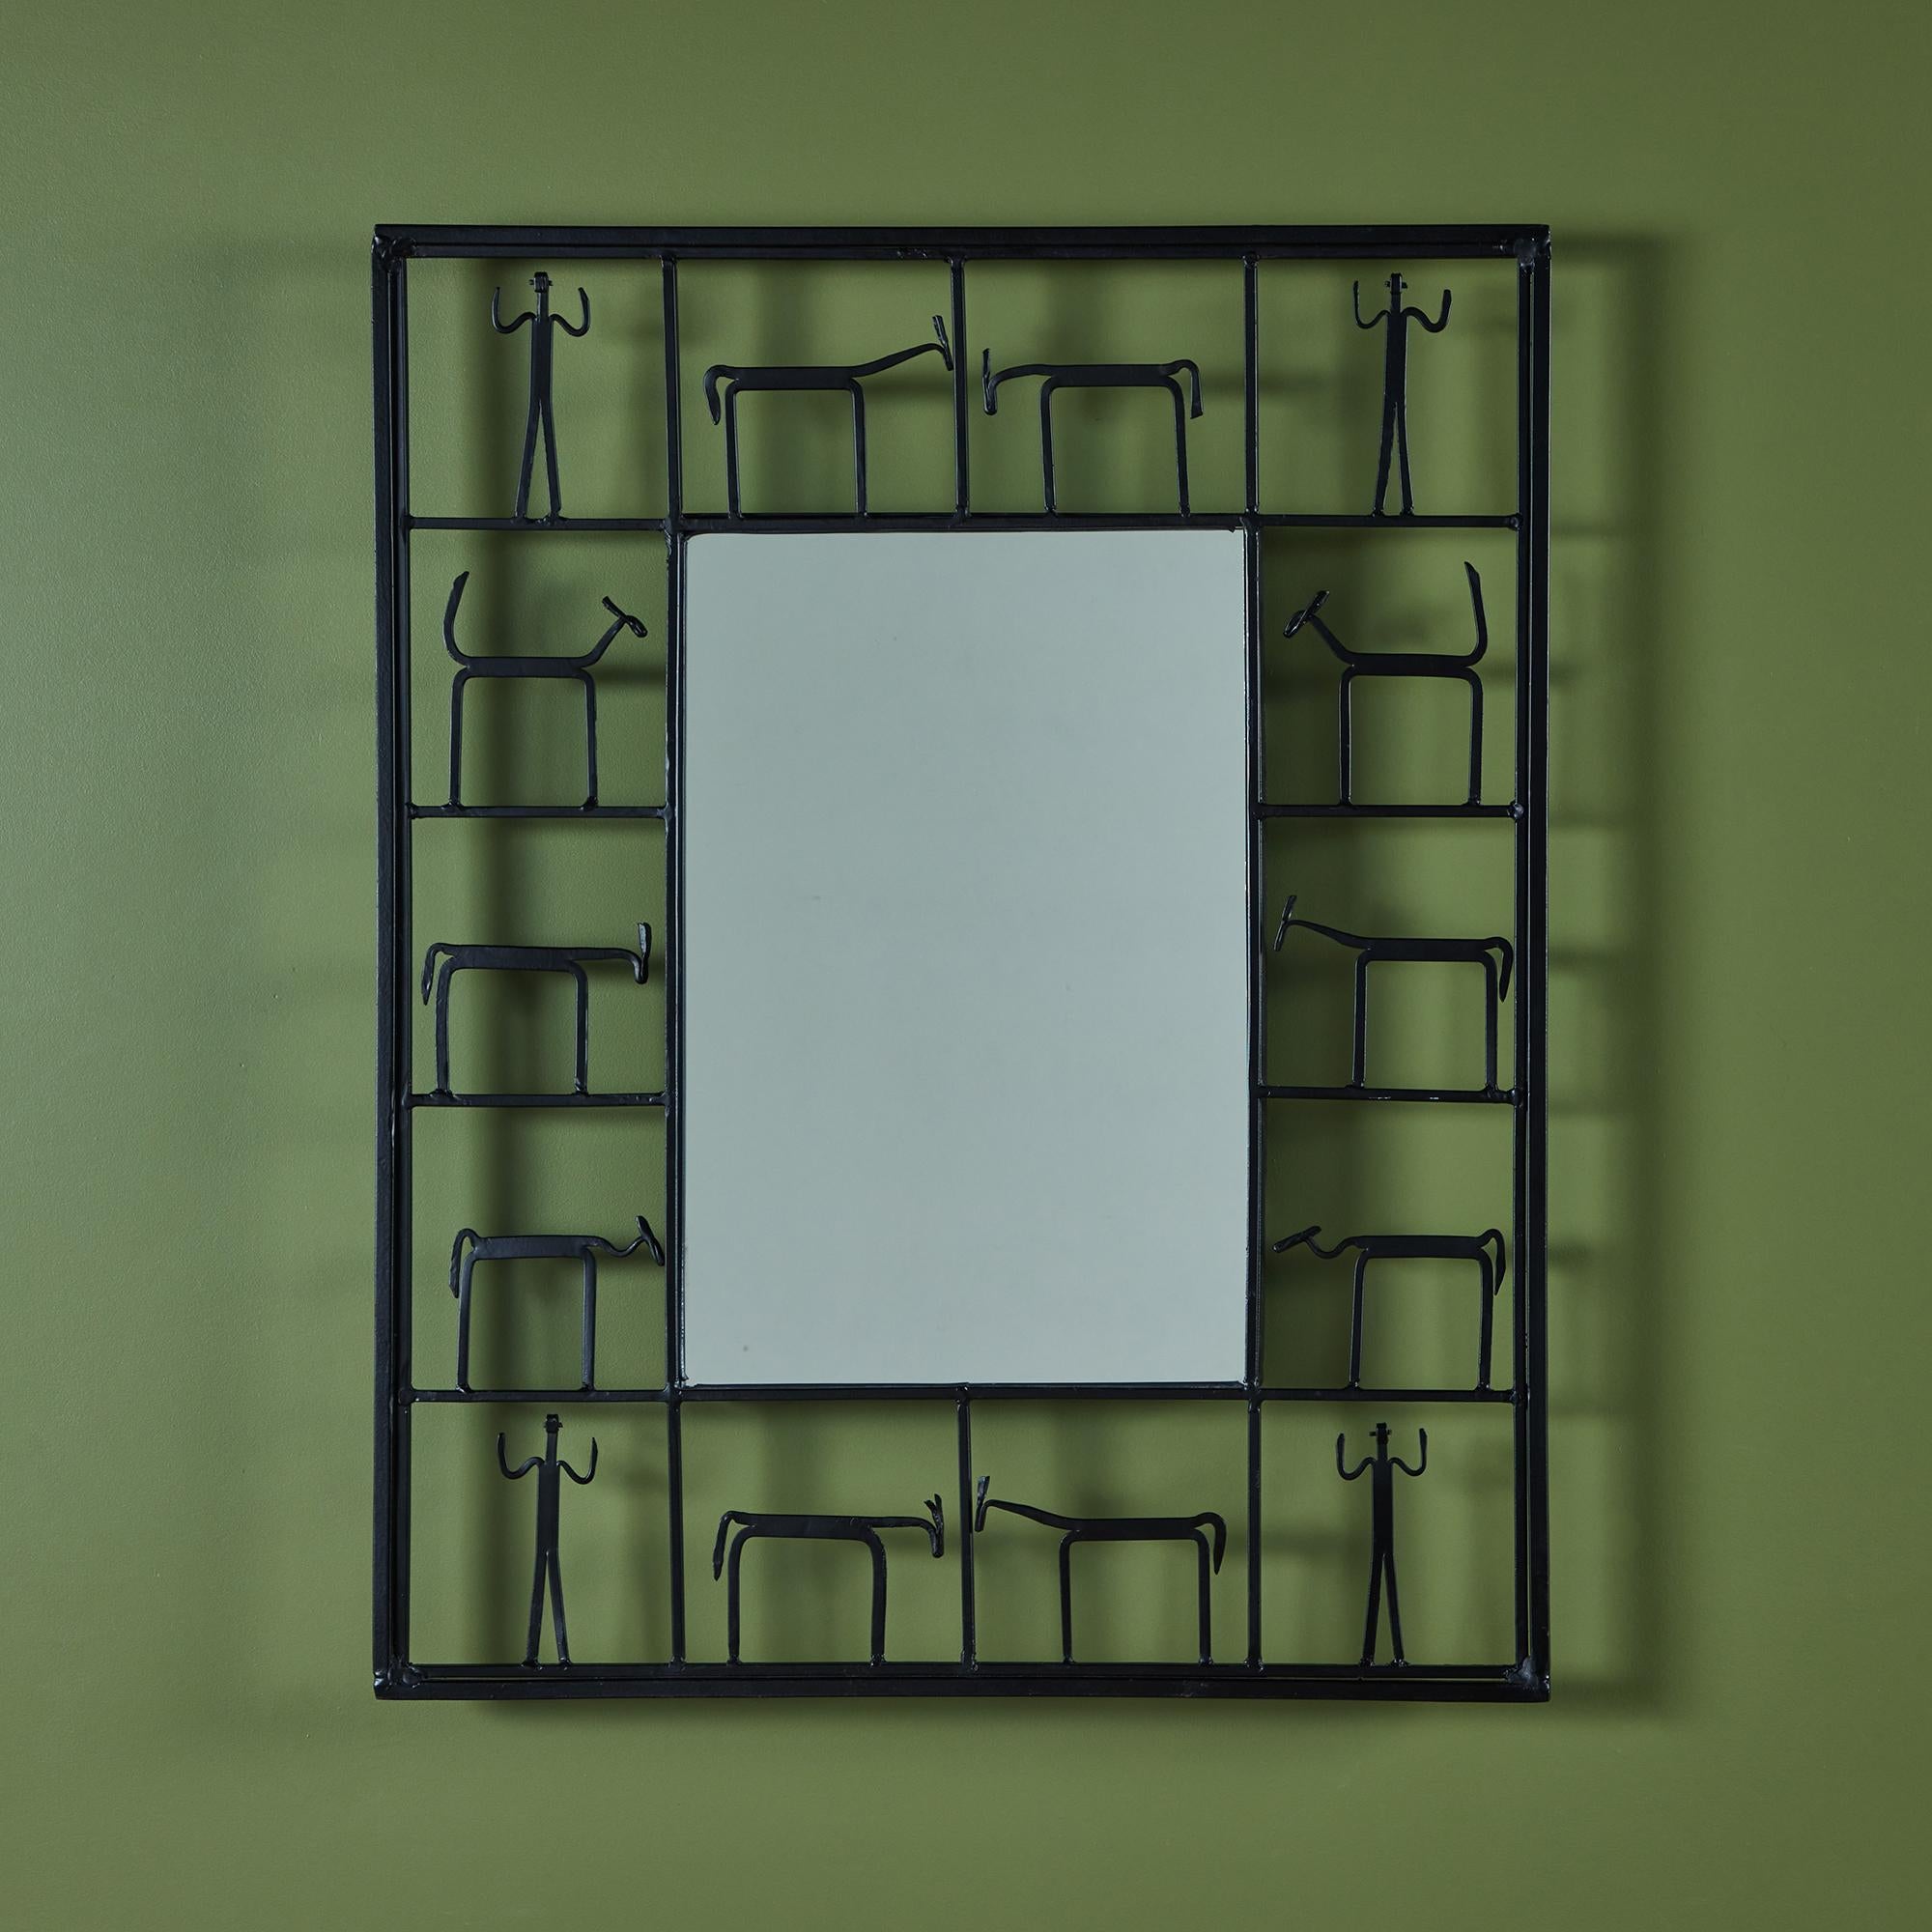 Modernistischer Wandspiegel im Stil von Frederick Weinberg. Der rechteckige Spiegel hat einen schwarzen Eisenrahmen, auf dem Tiere und Figuren abgebildet sind.

Abmessungen
24,25